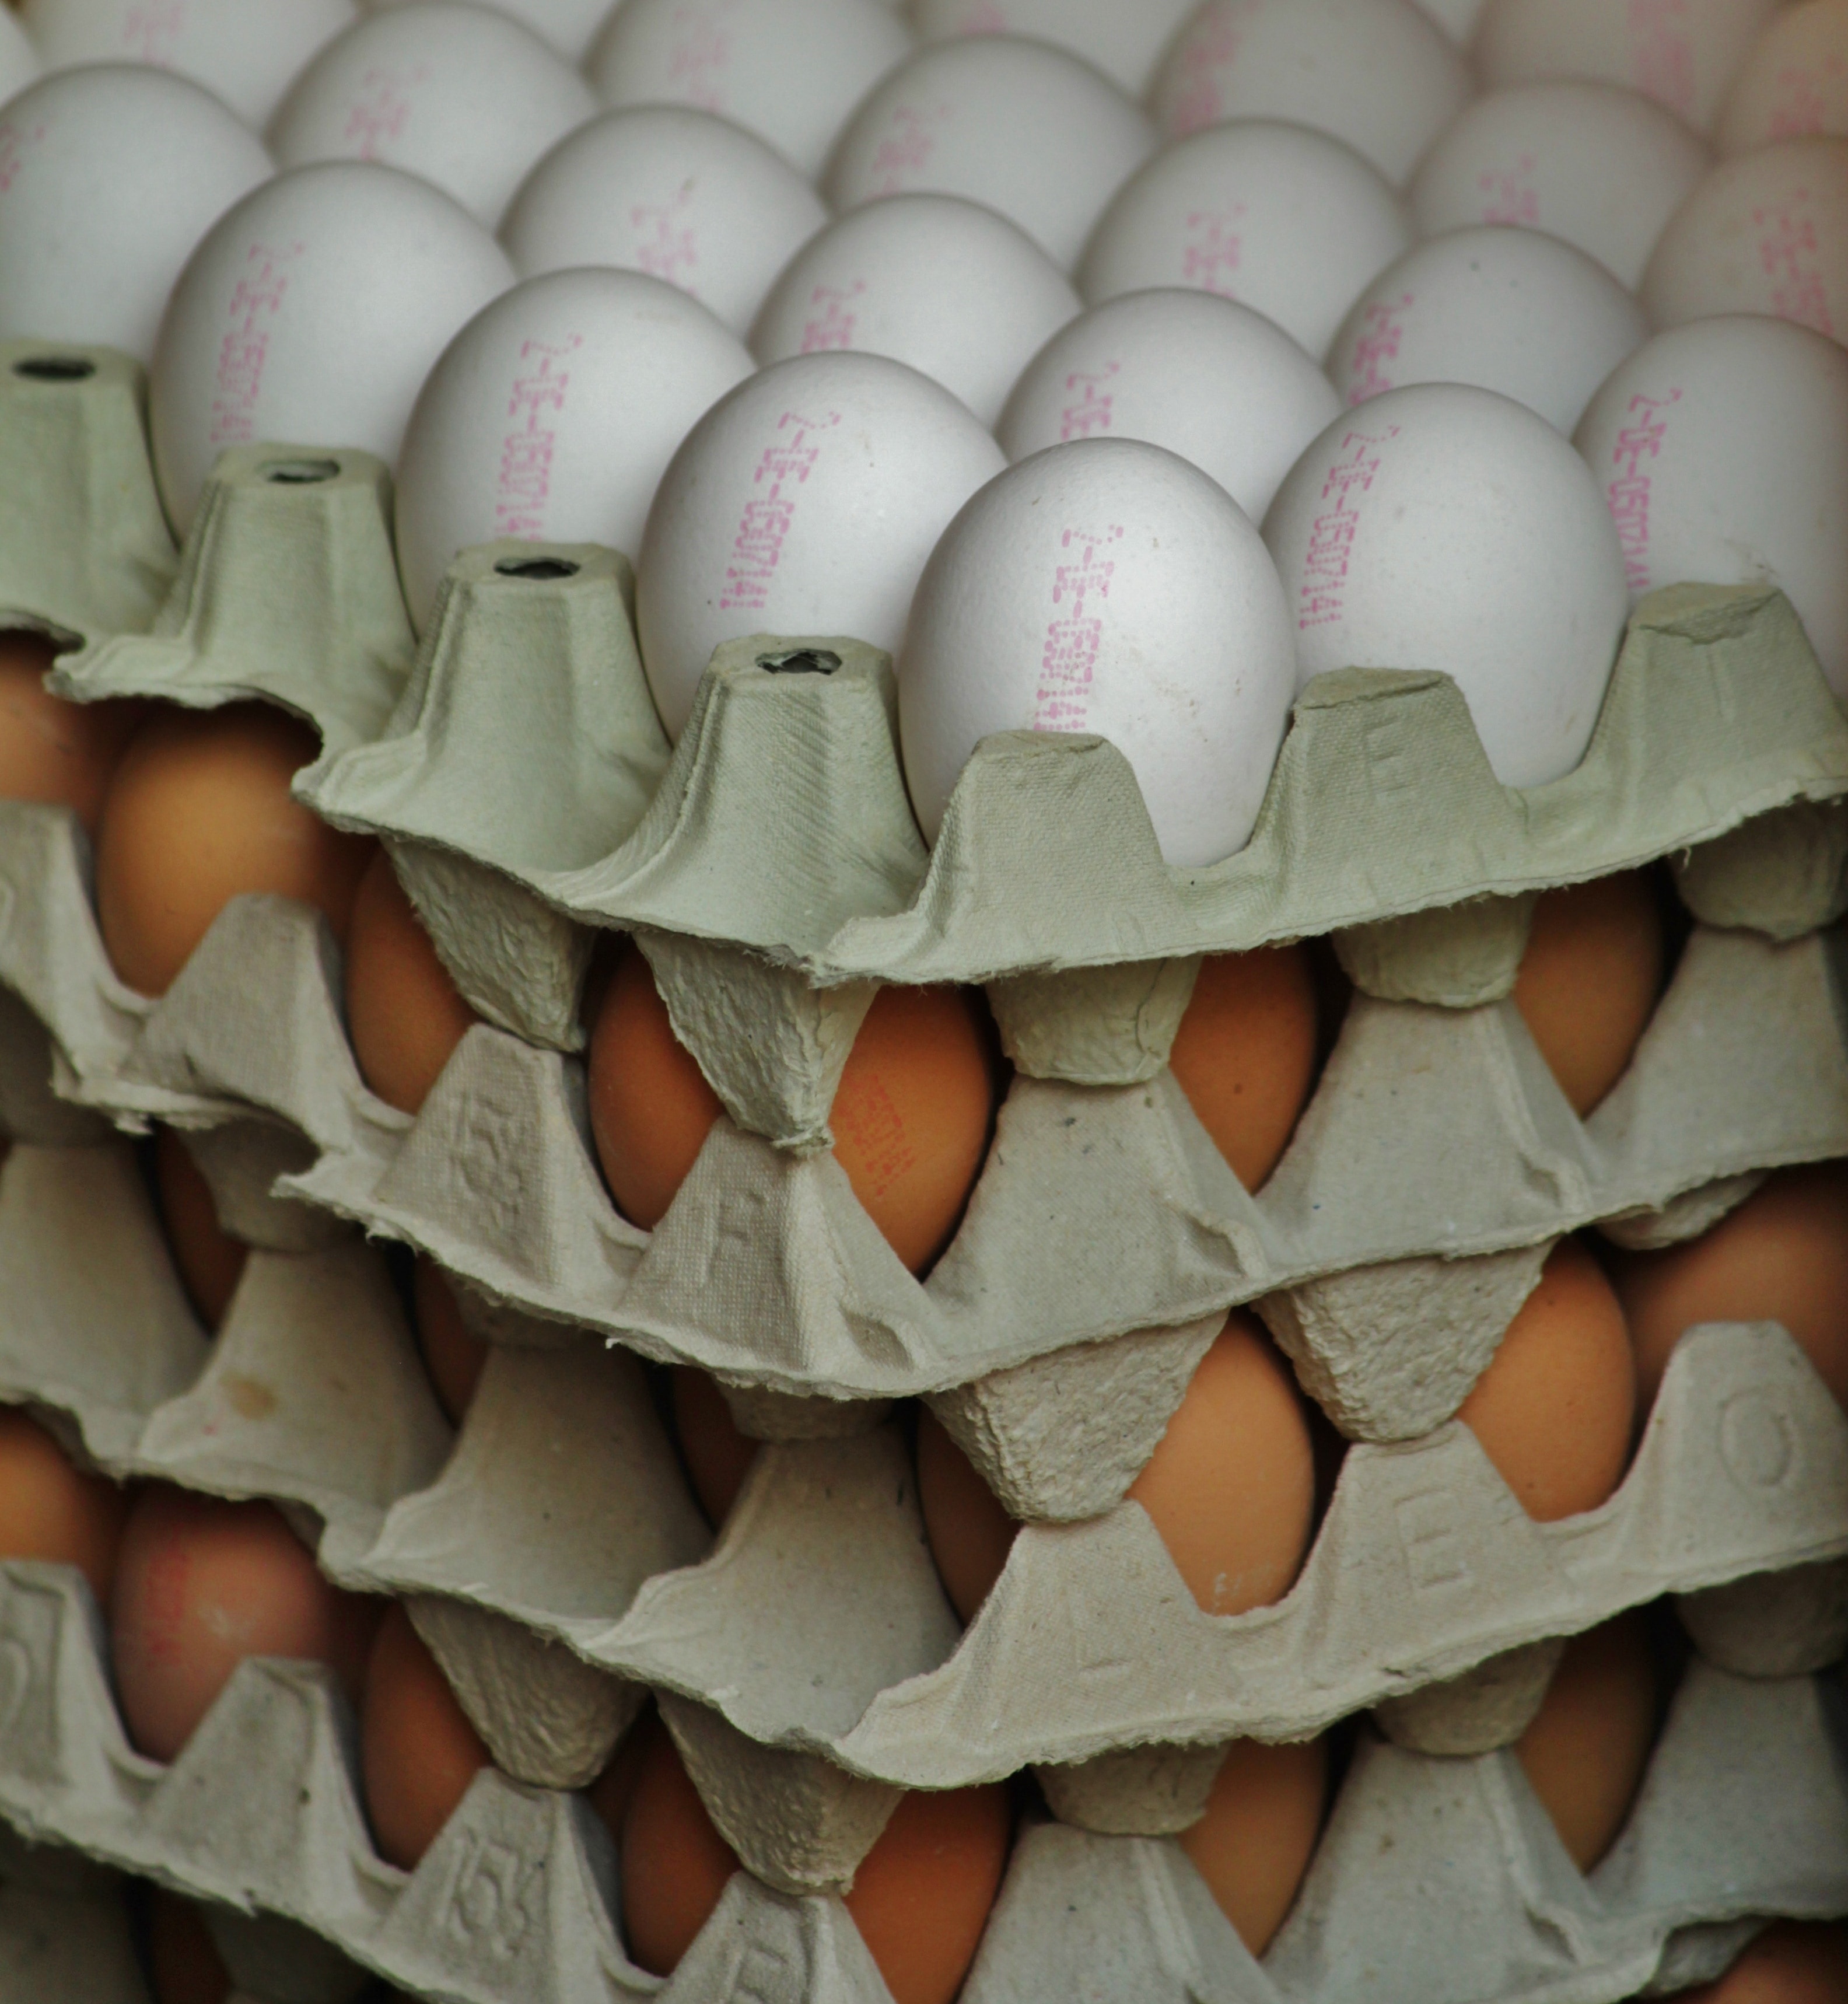 Egg Carton, Hen'S Egg, Egg, Egg Shells, egg, large group of objects